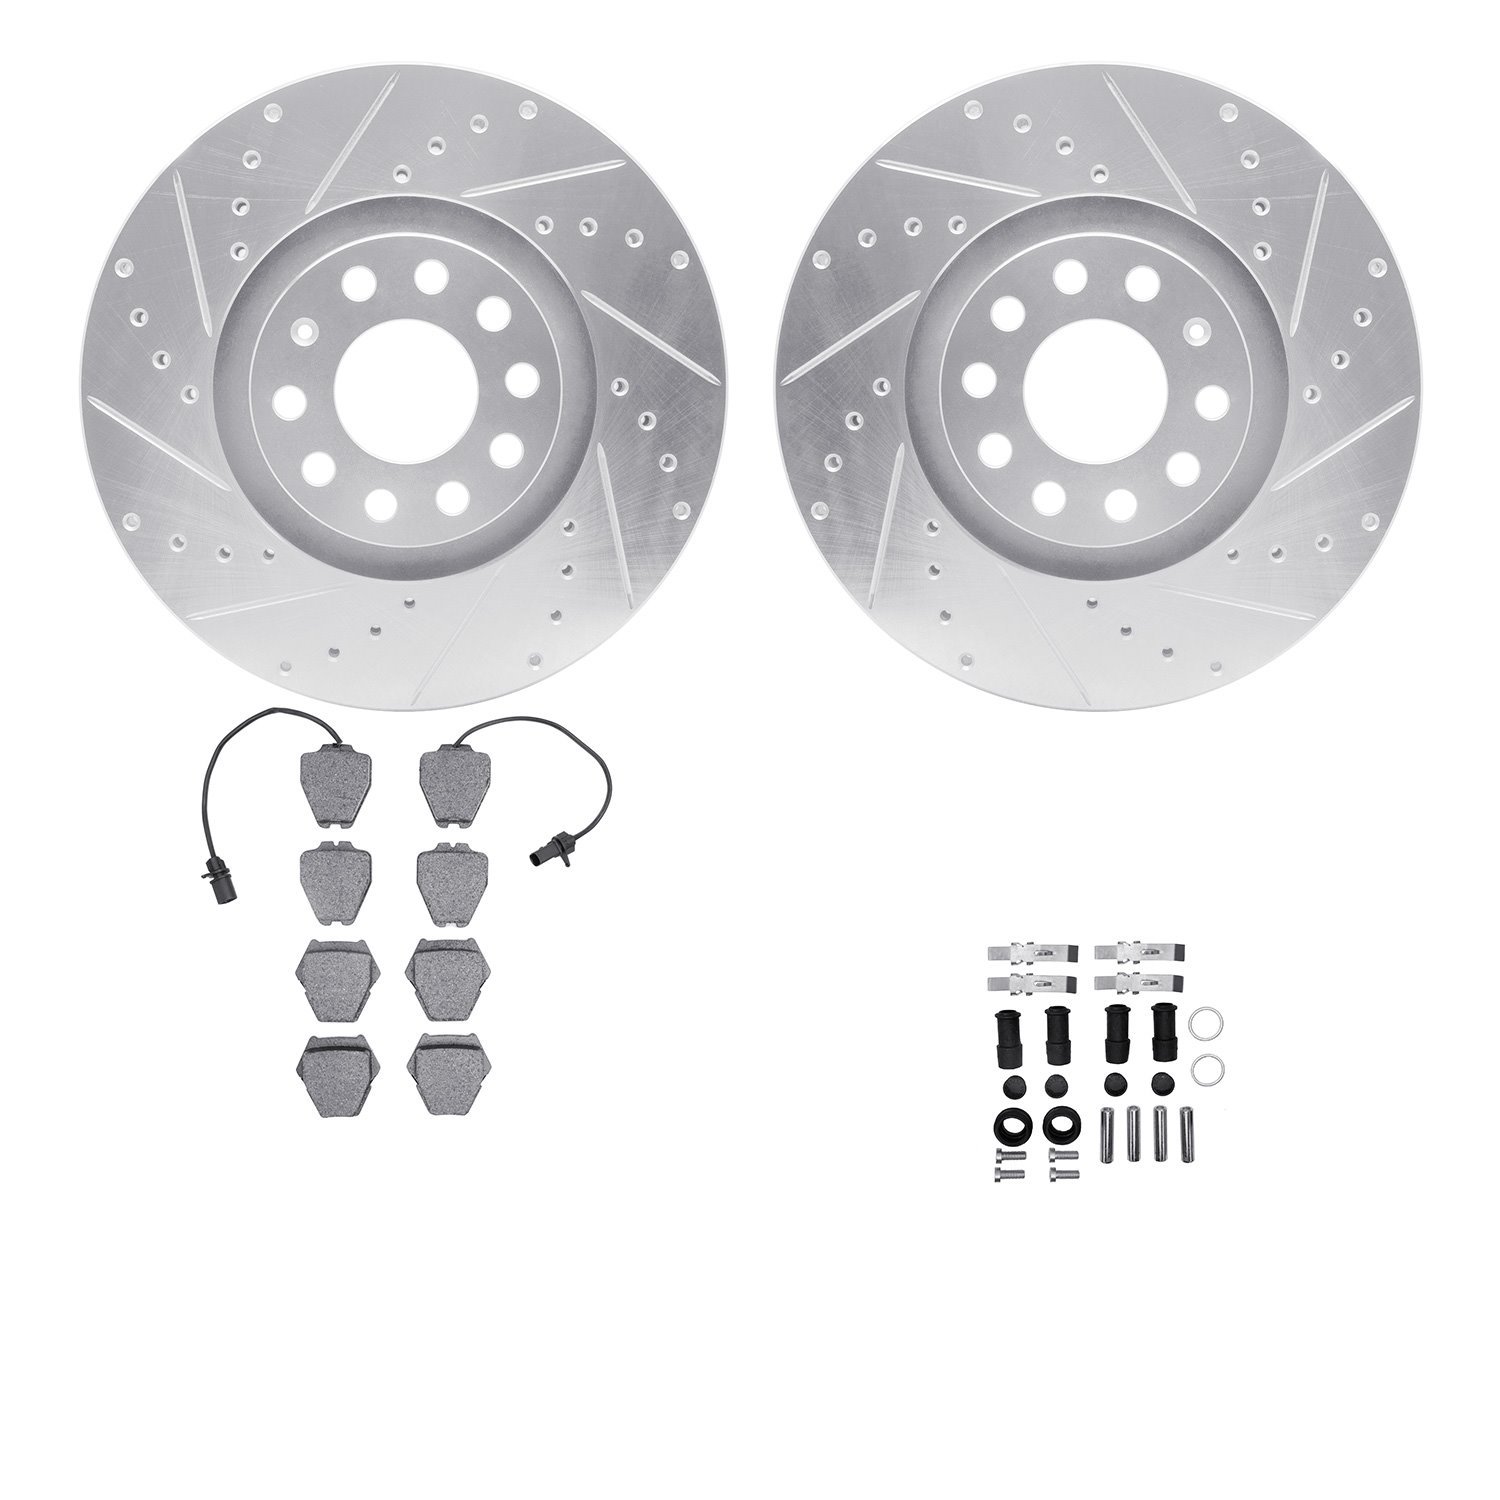 7612-73031 Drilled/Slotted Brake Rotors w/5000 Euro Ceramic Brake Pads Kit & Hardware [Silver], 1999-2005 Audi/Volkswagen, Posit